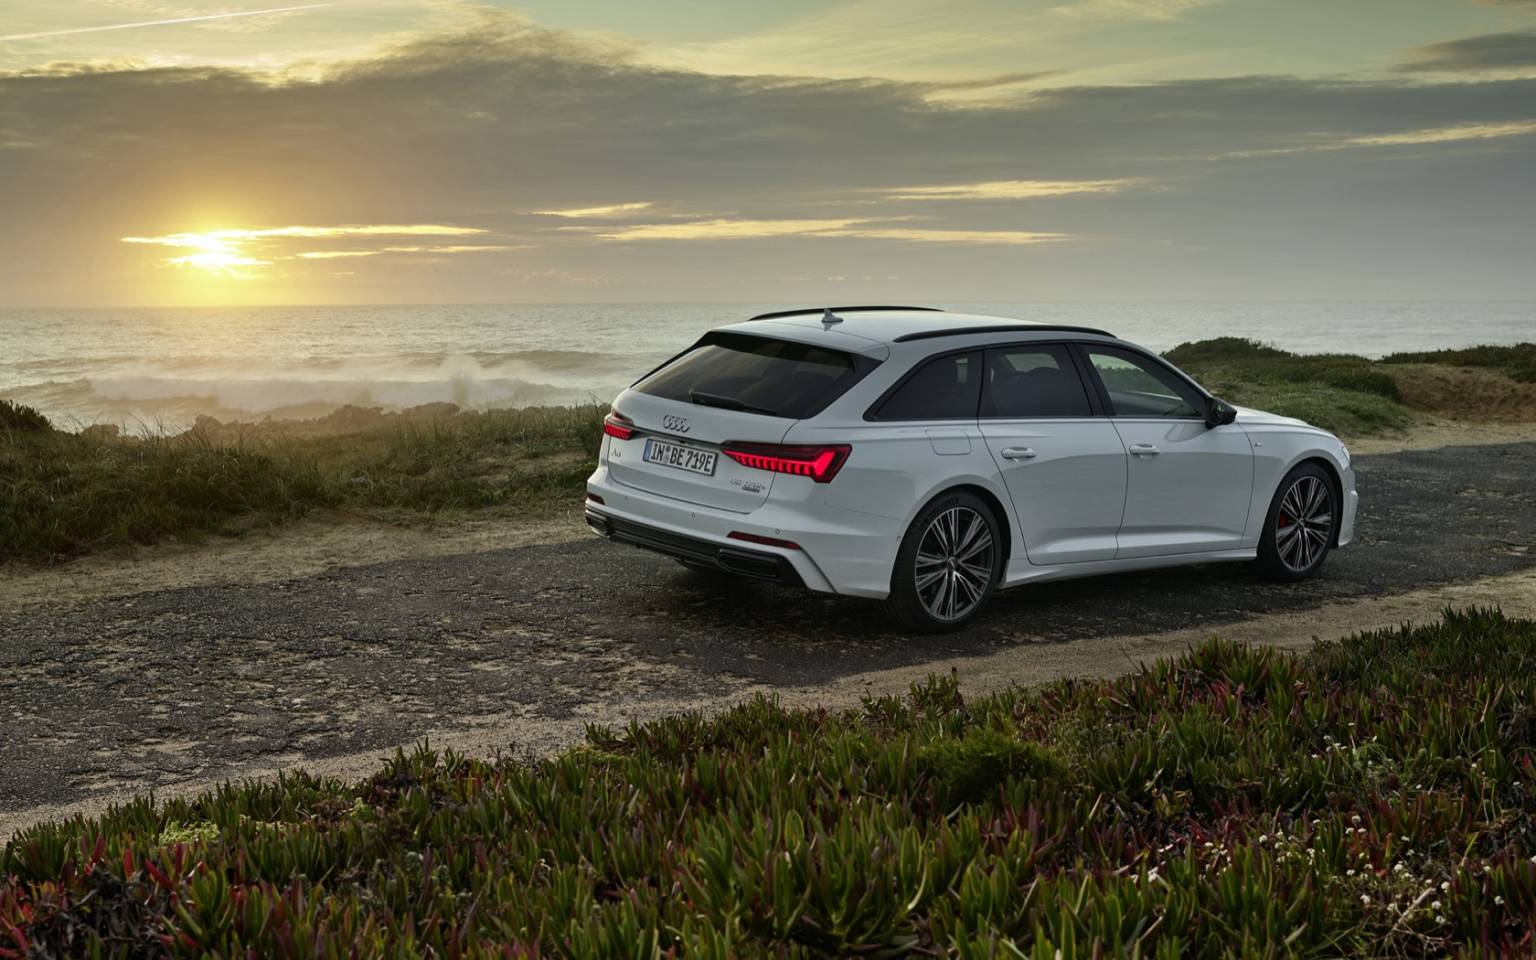 2020年Audi A6 Avant 55 TFSI e quattro将令人惊叹的旅行车变成插电式混合动力车